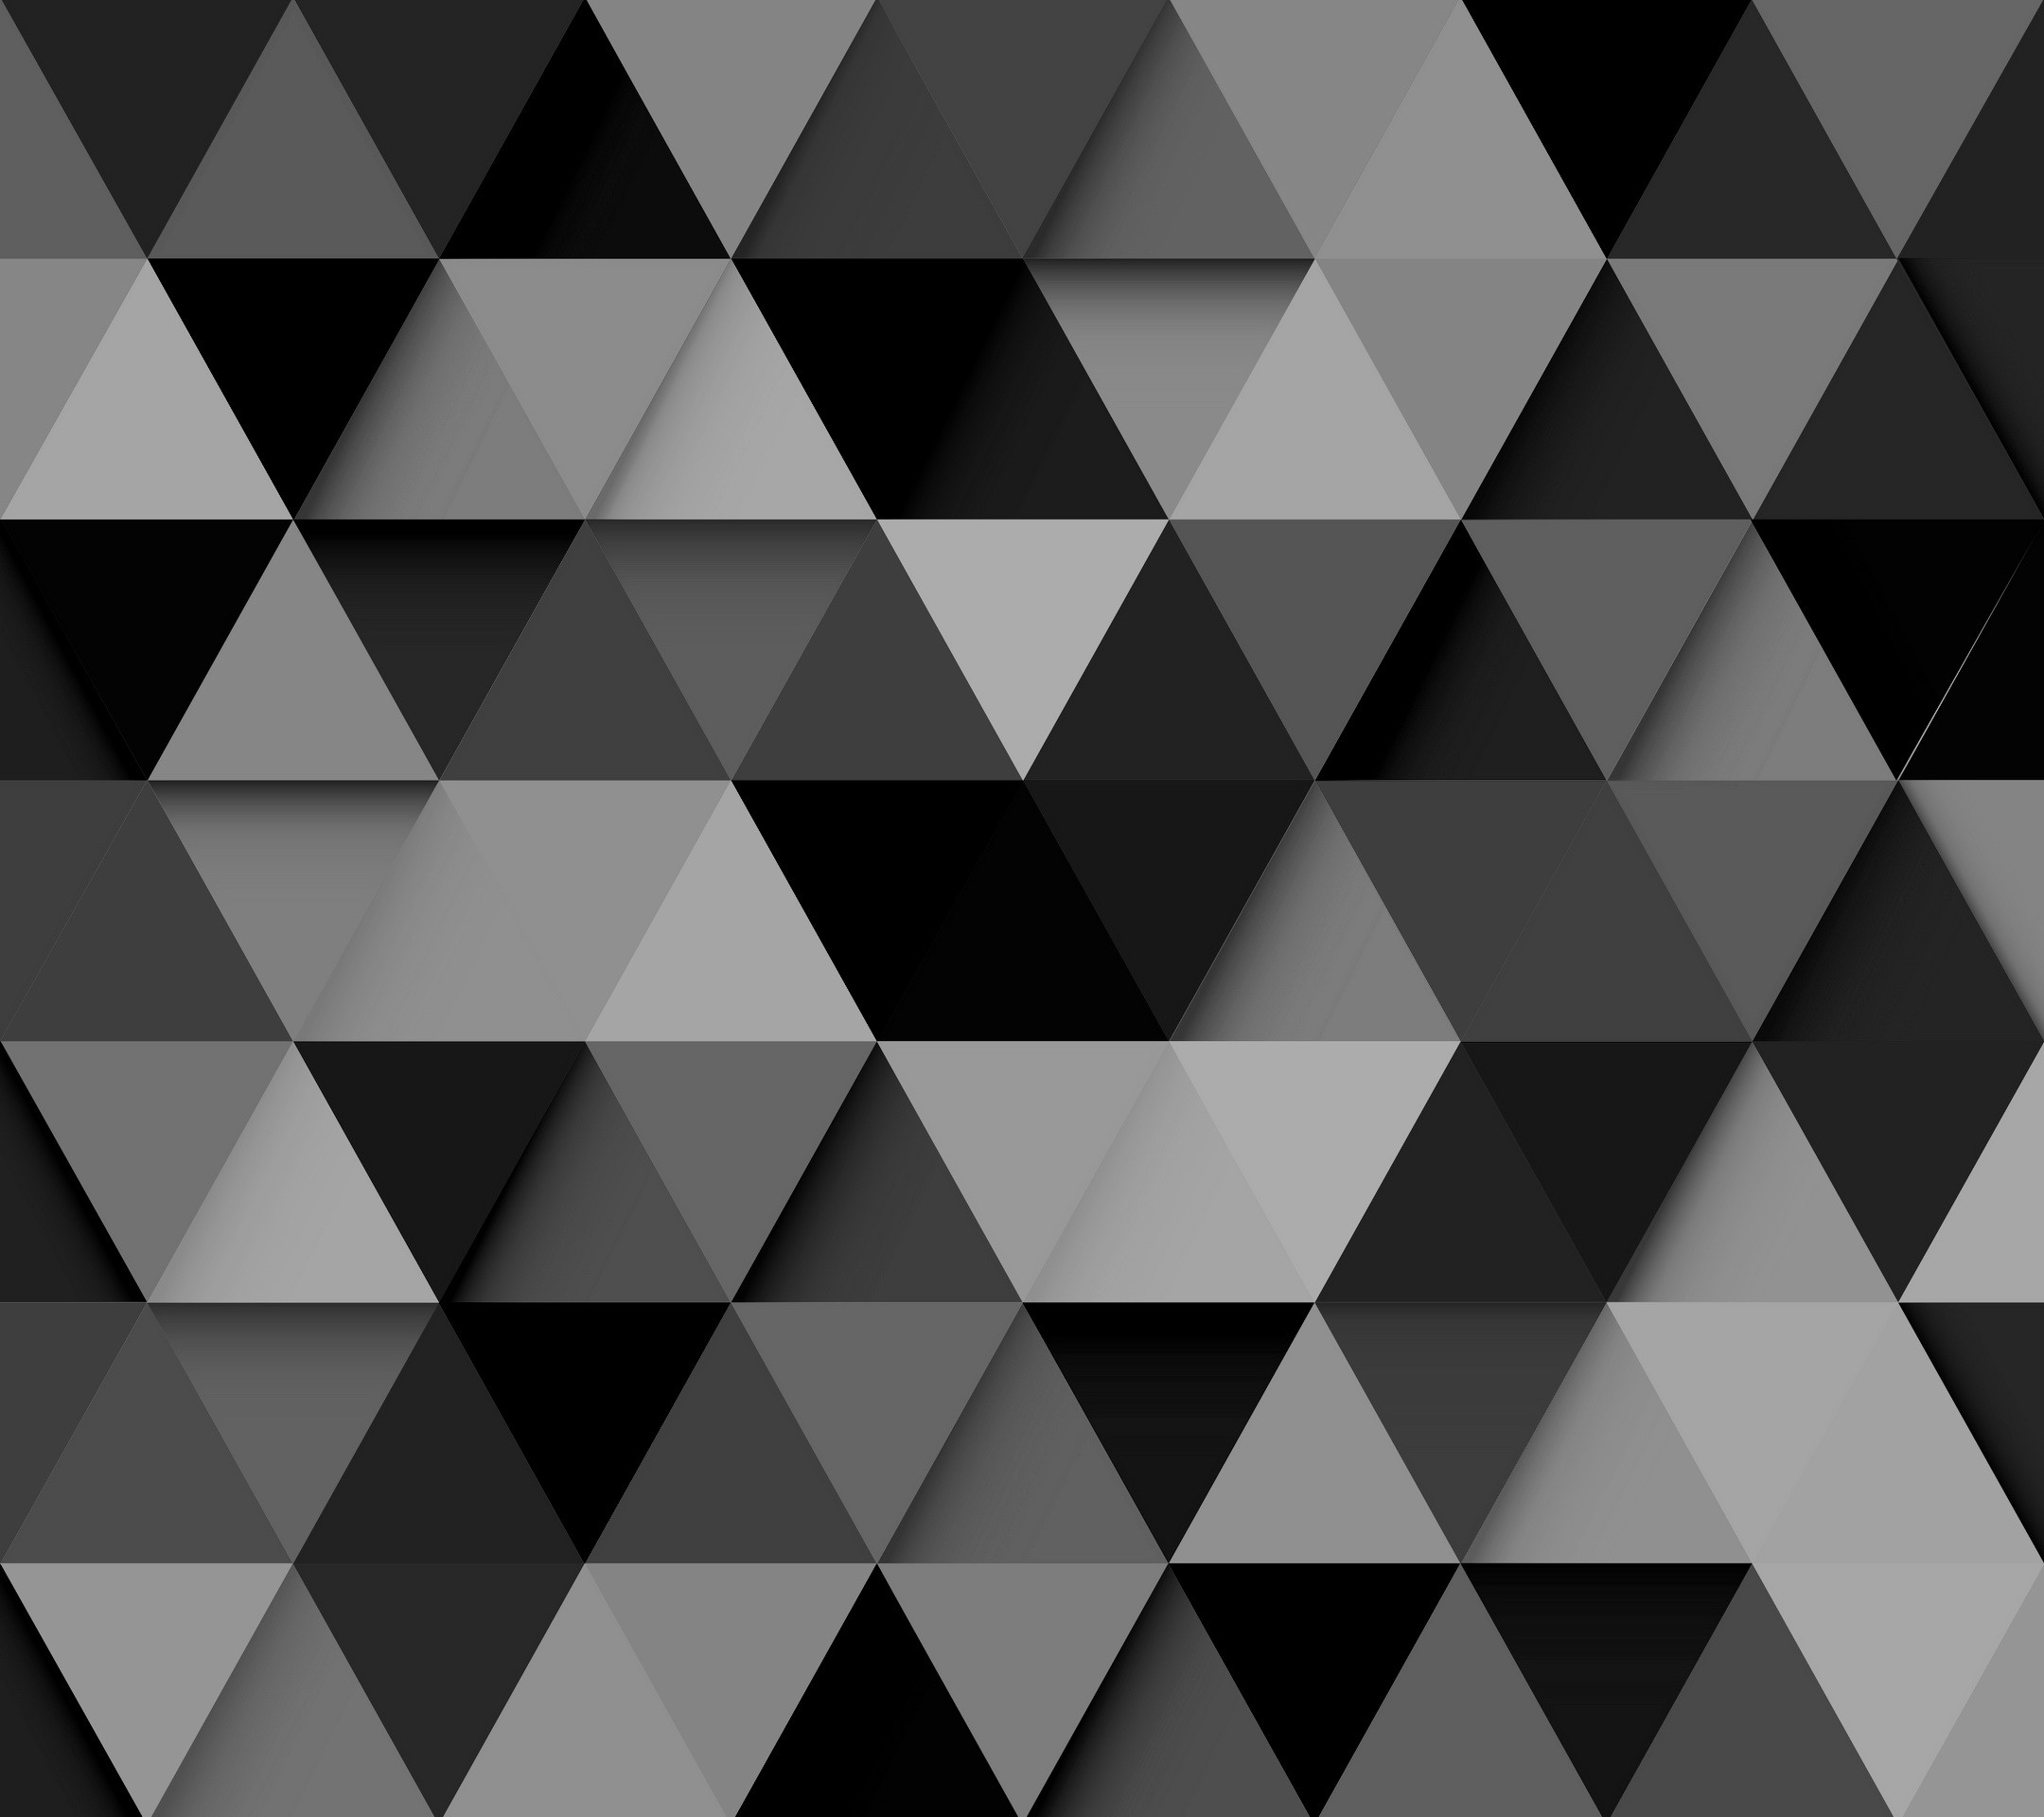 tapete triangulos,schwarz,muster,schwarz und weiß,monochrome fotografie,einfarbig